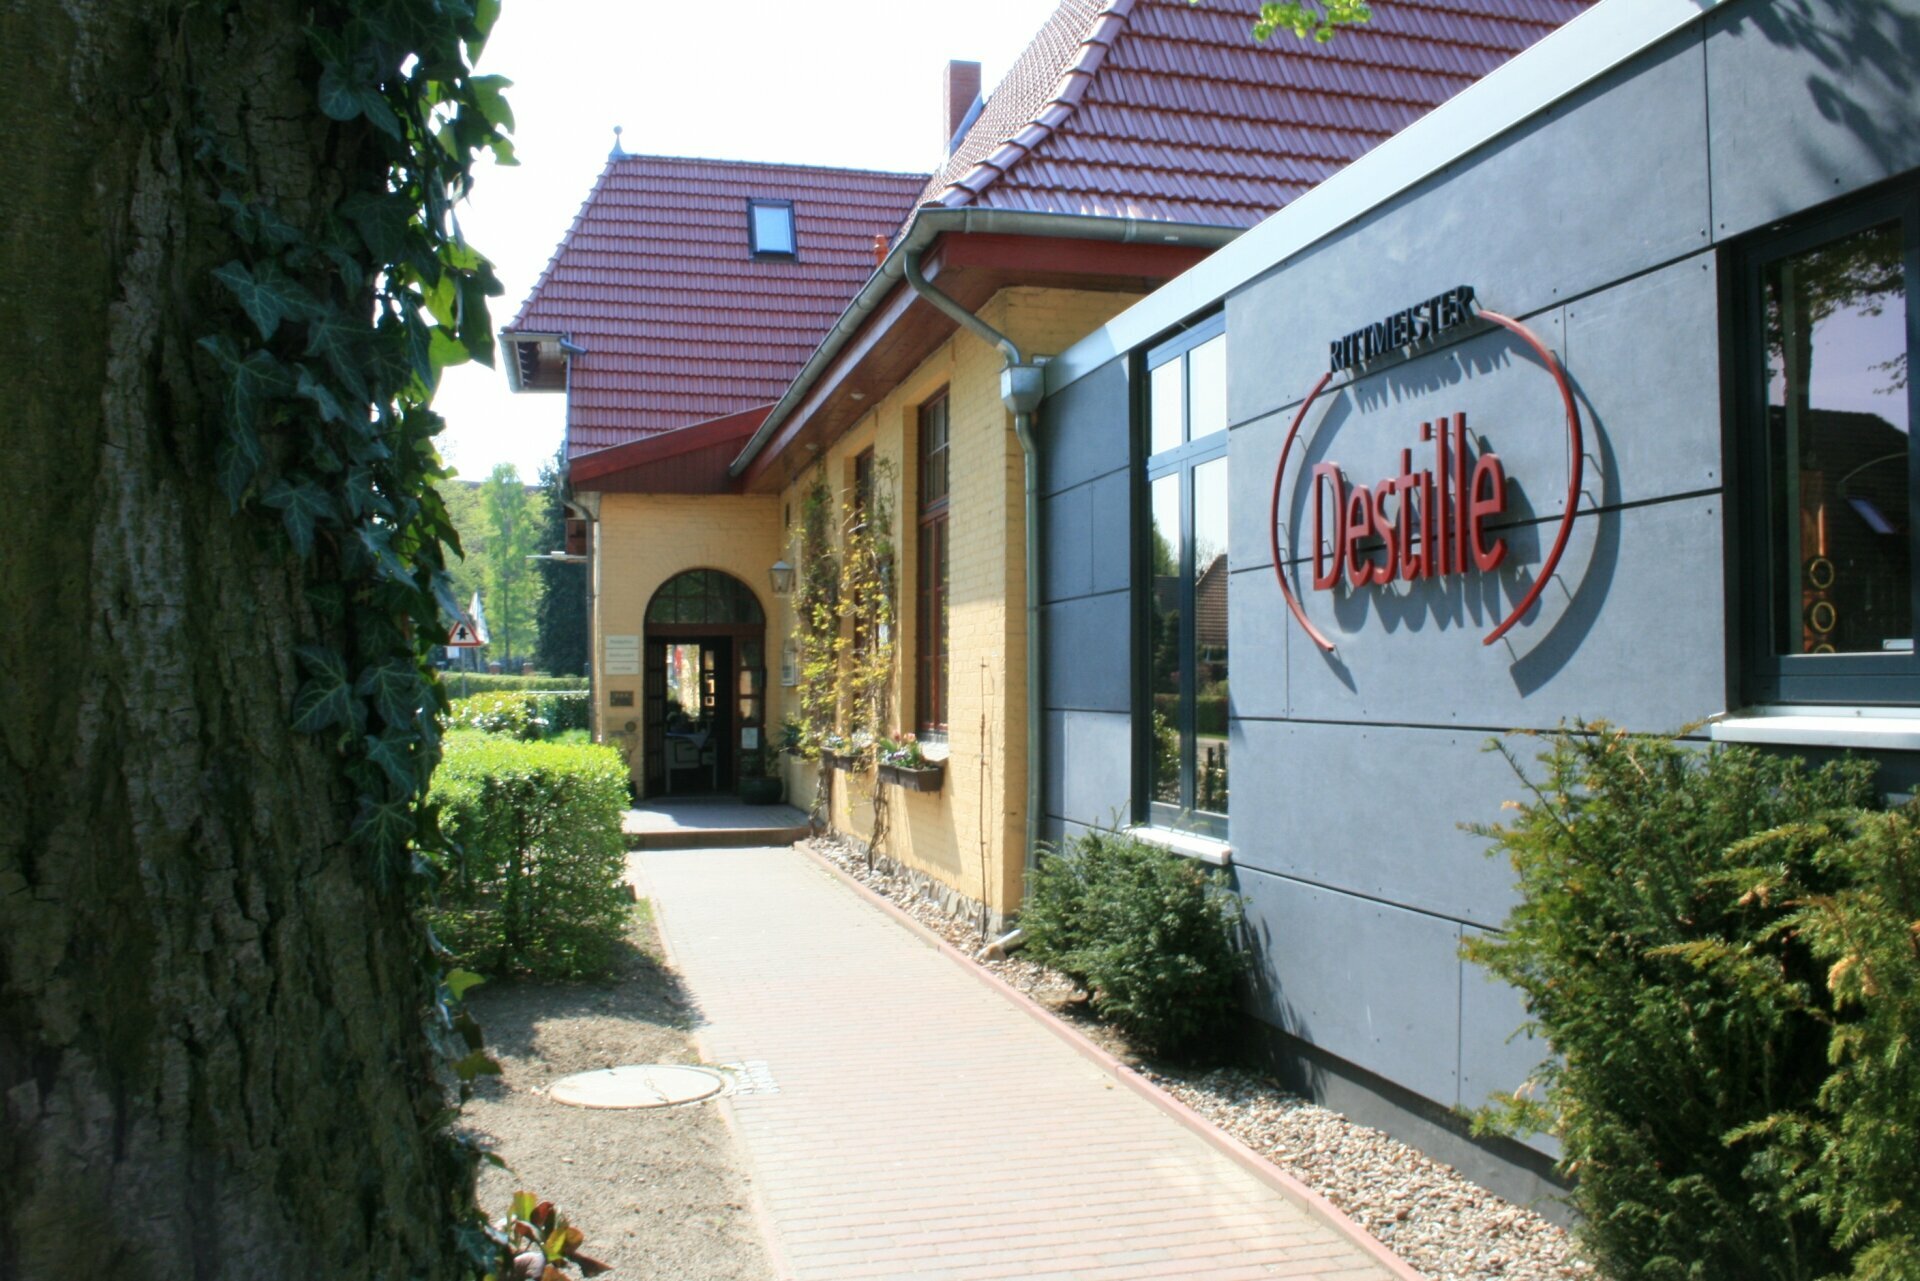 4 Tage Ostern 2023 Landhotel Rittmeister in Rostock, Mecklenburg-Vorpommern inkl. Halbpension